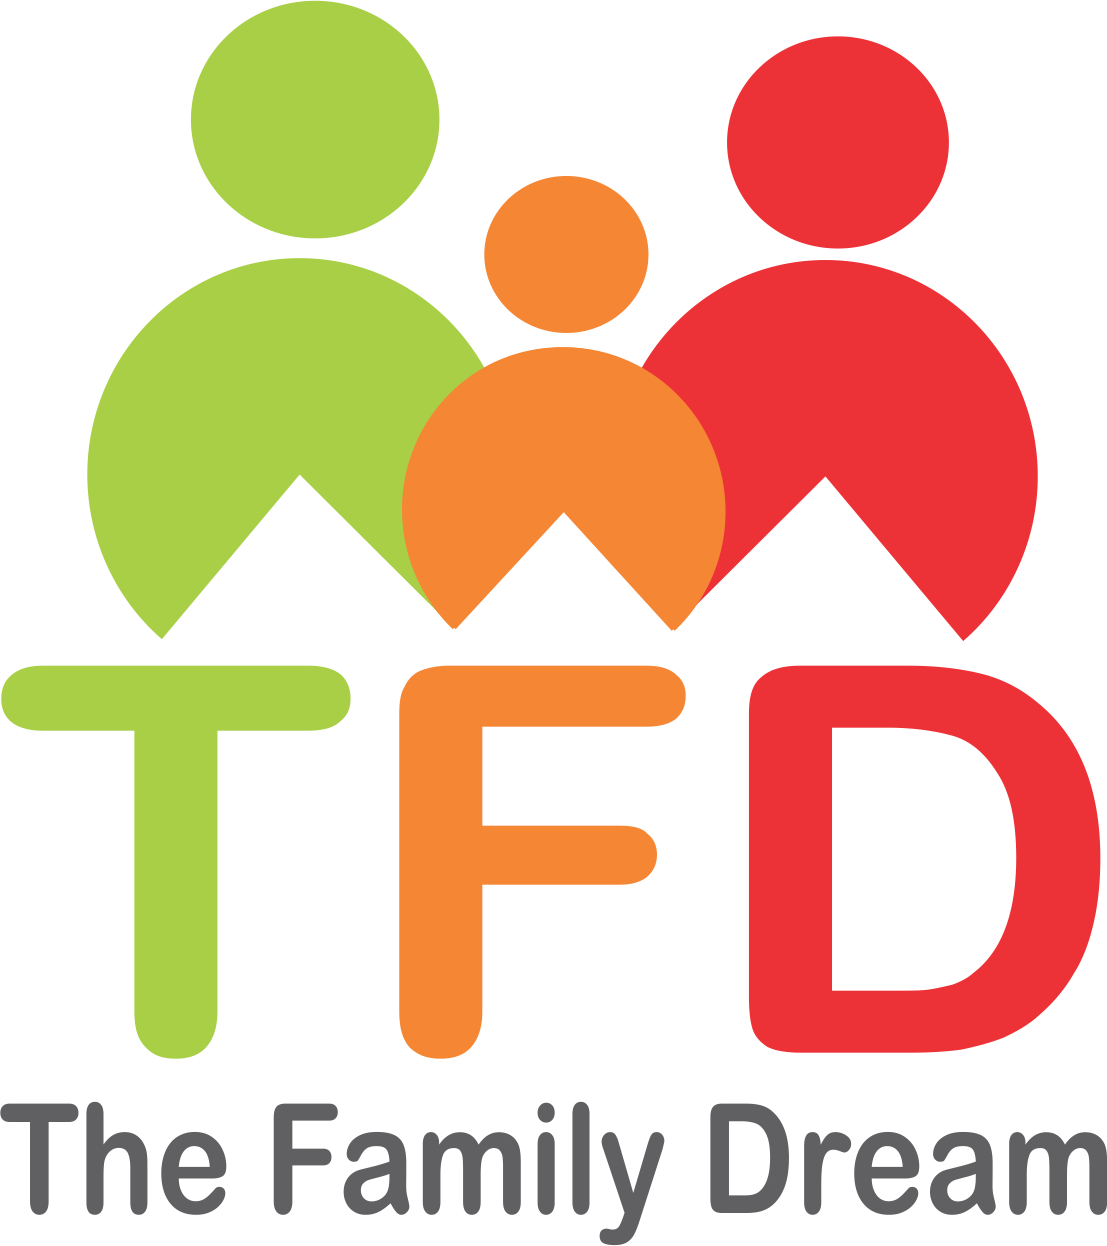 Dream dream family